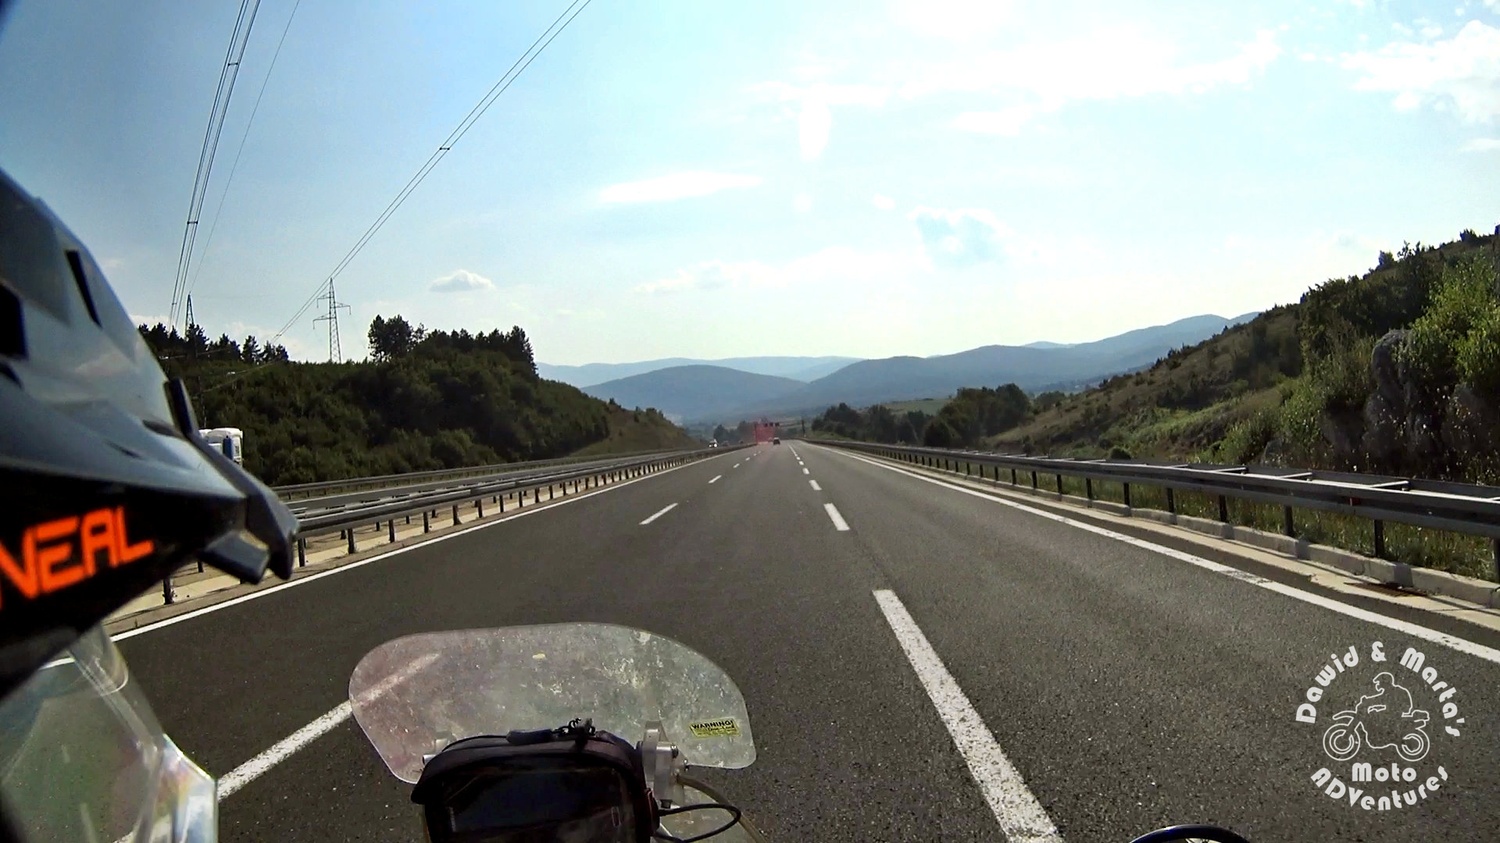 Snapshot from E71 road, Croatia